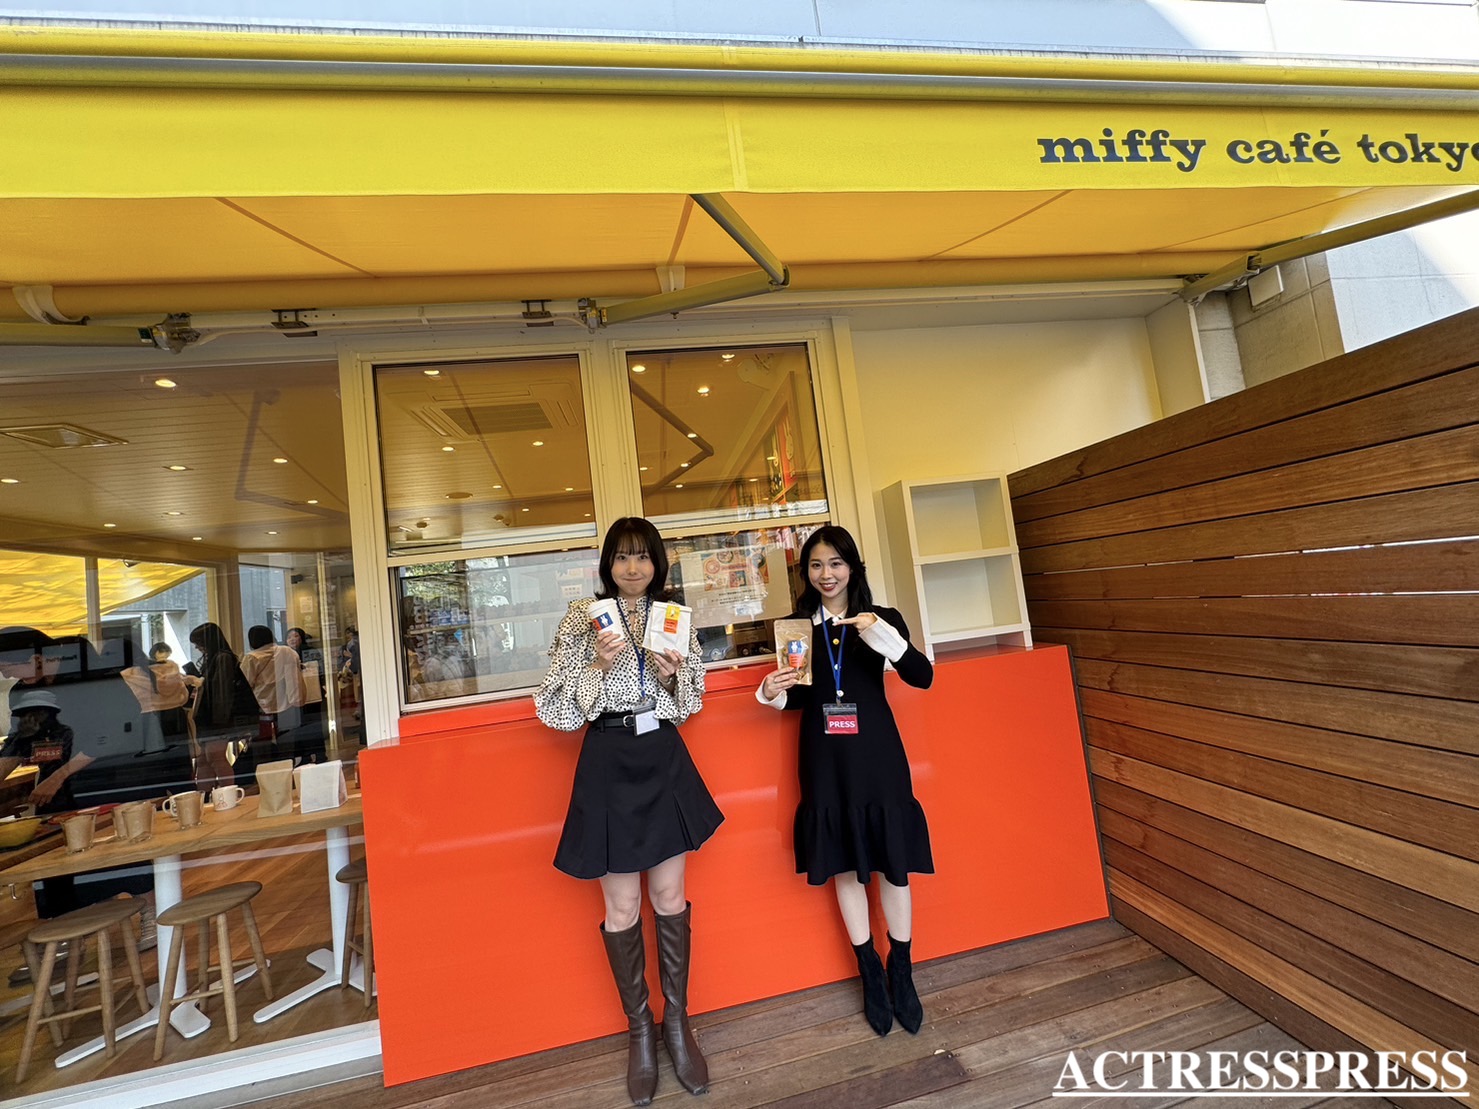 増田ほの香、國近奈旺（ACTRESS PRESS REPORTER（アクトレスプレス リポーター）in miffy café tokyo（ミッフィーカフェ トーキョー）​​代官山駅